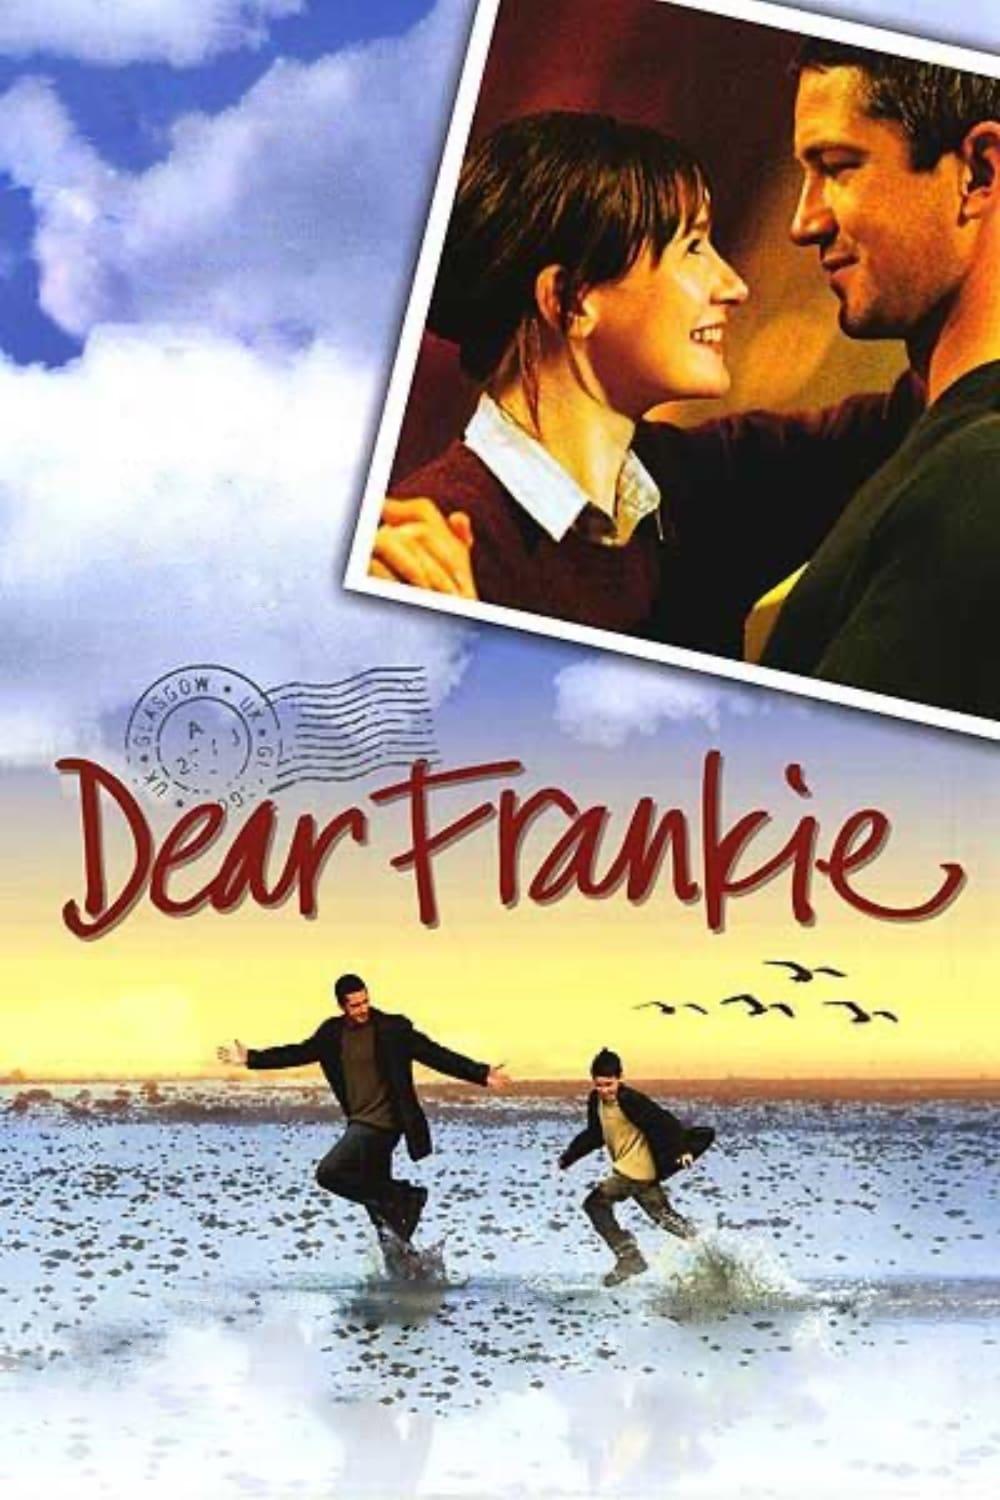 Dear Frankie poster